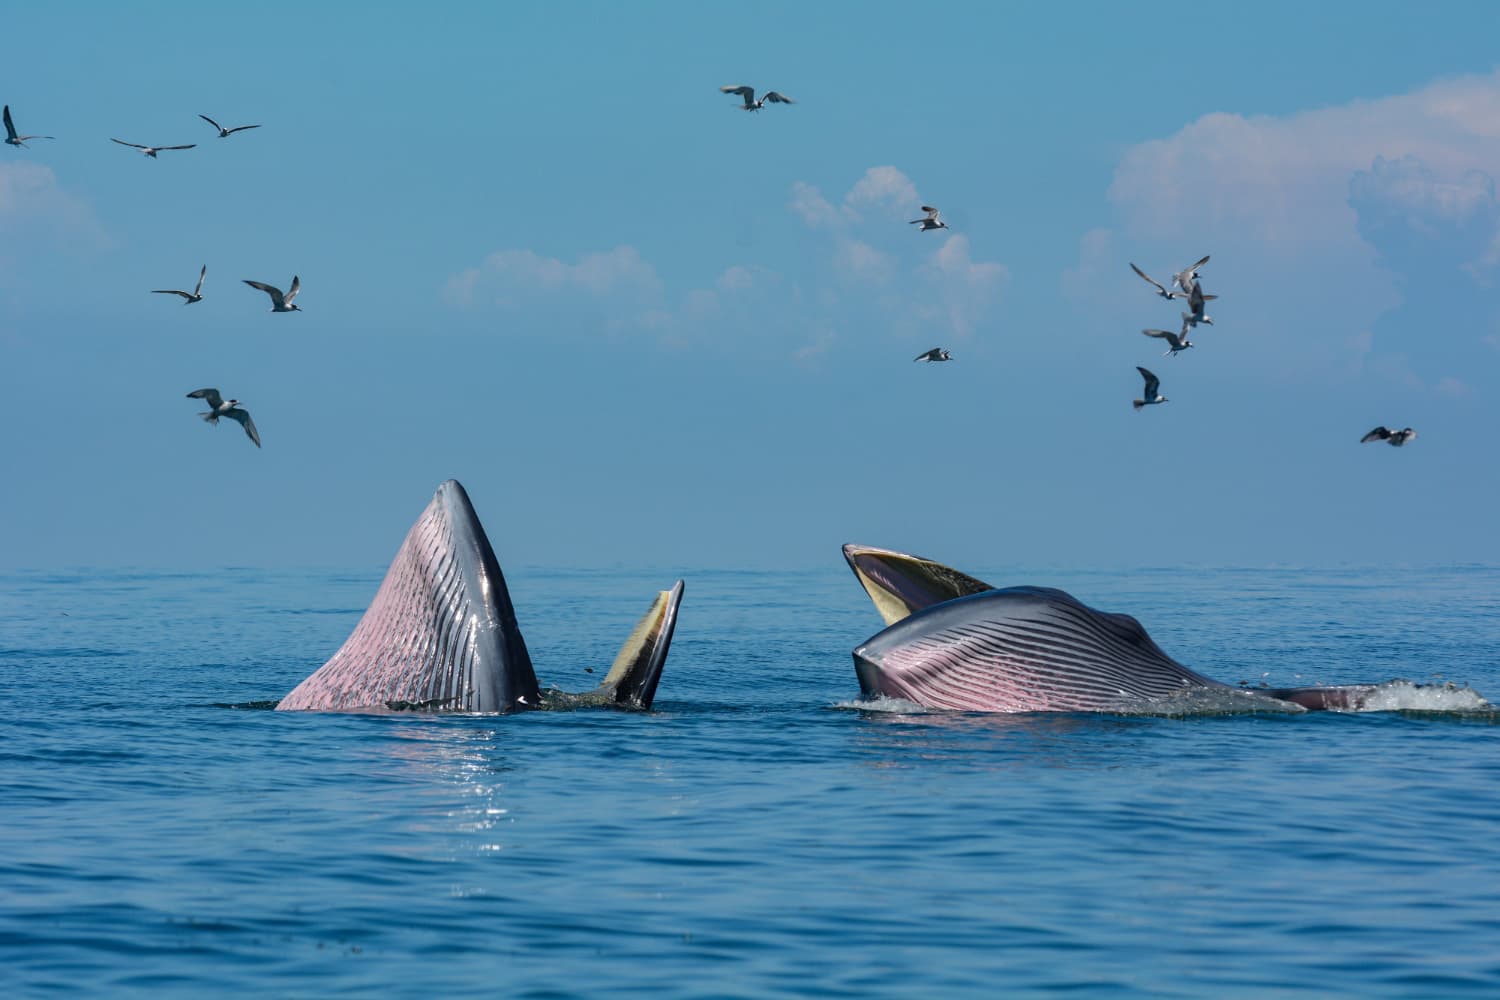 Avistaje de ballenas en el Golfo de Baja California: Ballenas nadando en aguas mexicanas durante su migración anual